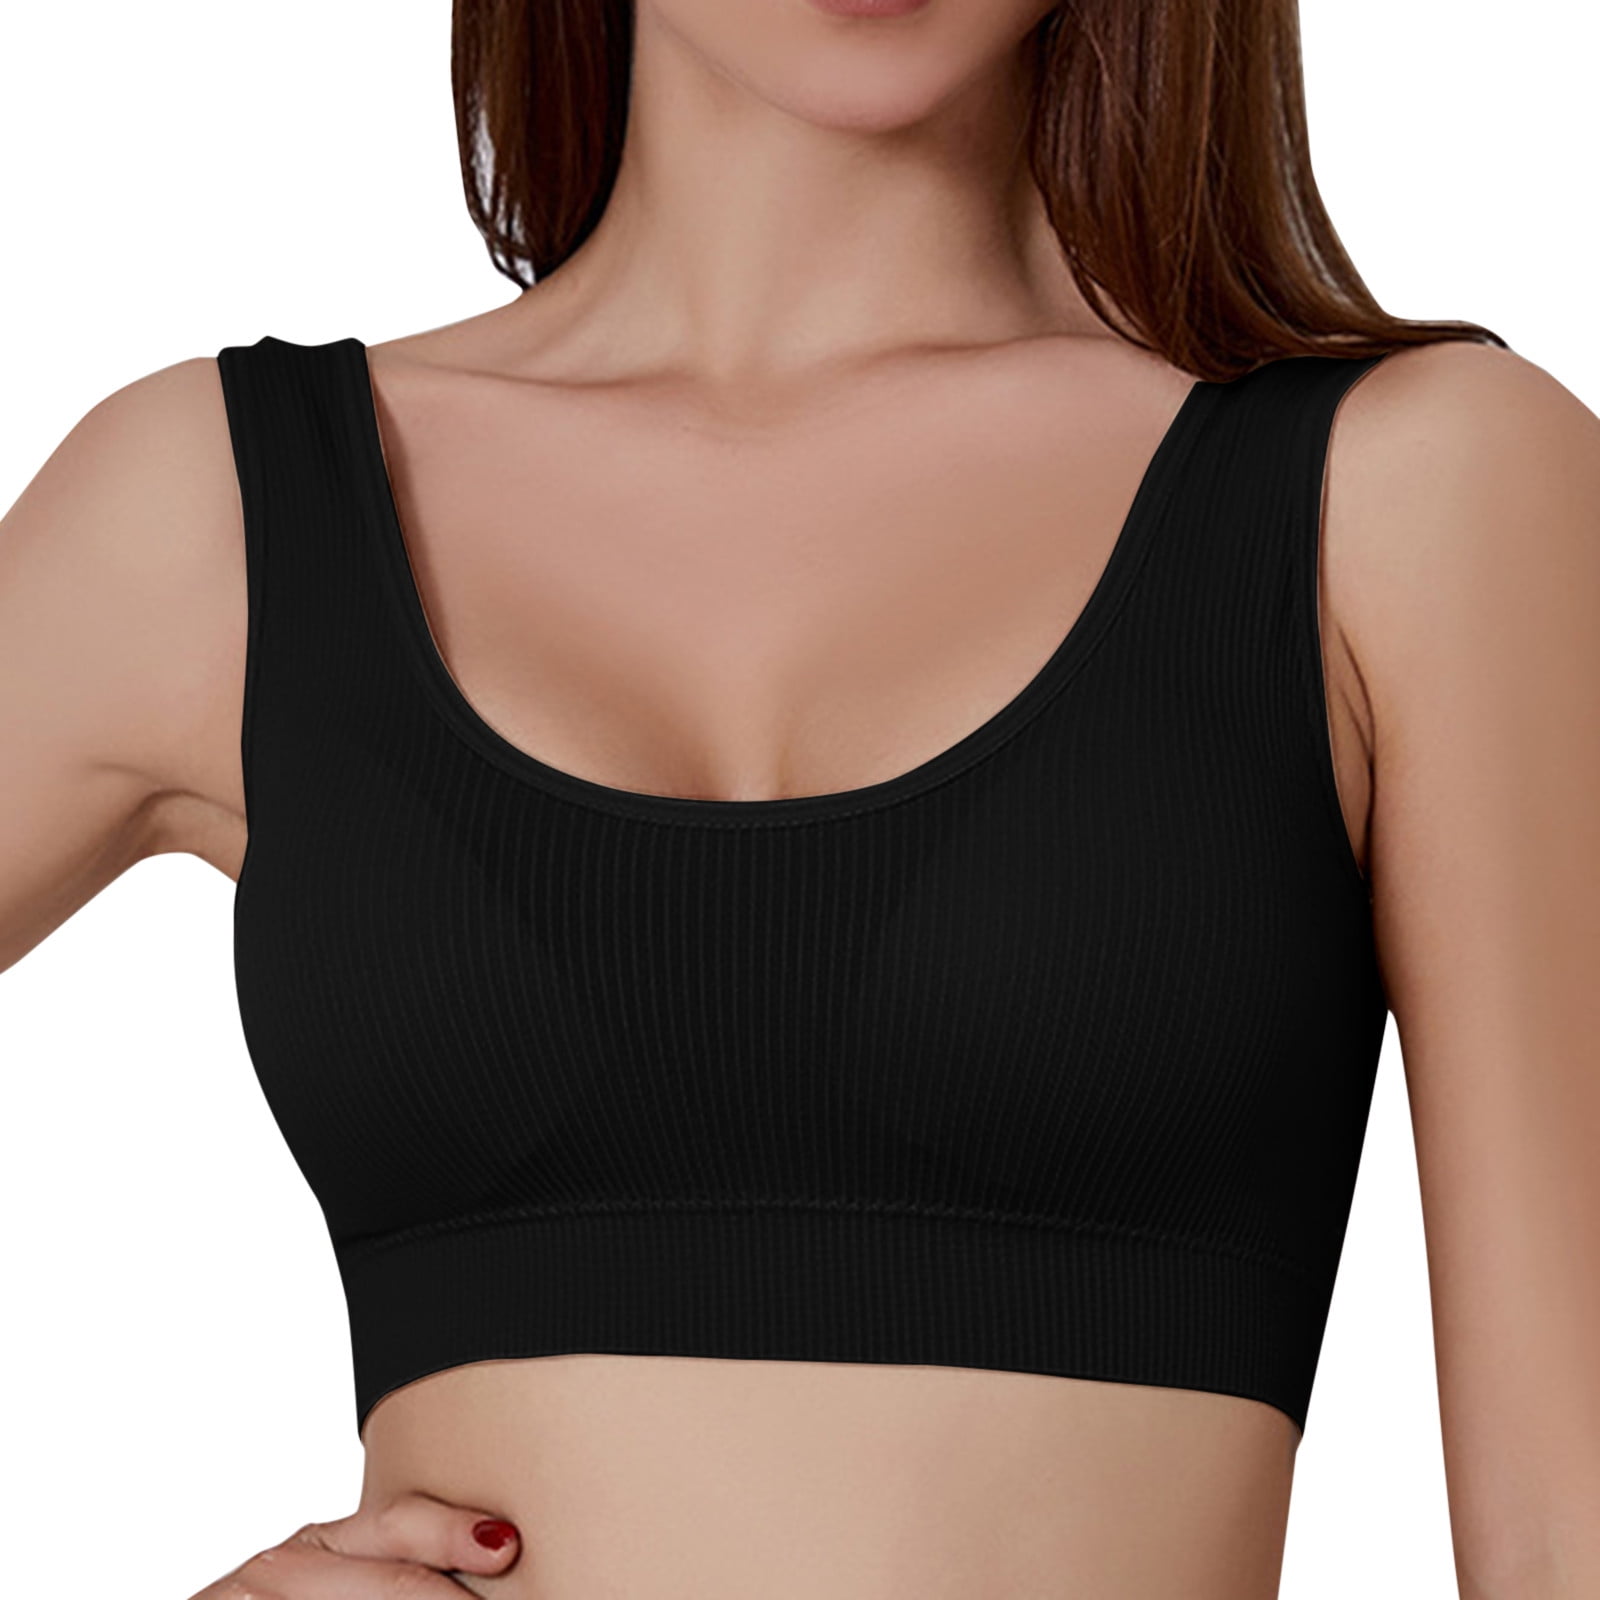 Eashery Comfortable Bras for Women Women's X-Temp Wireless Bra